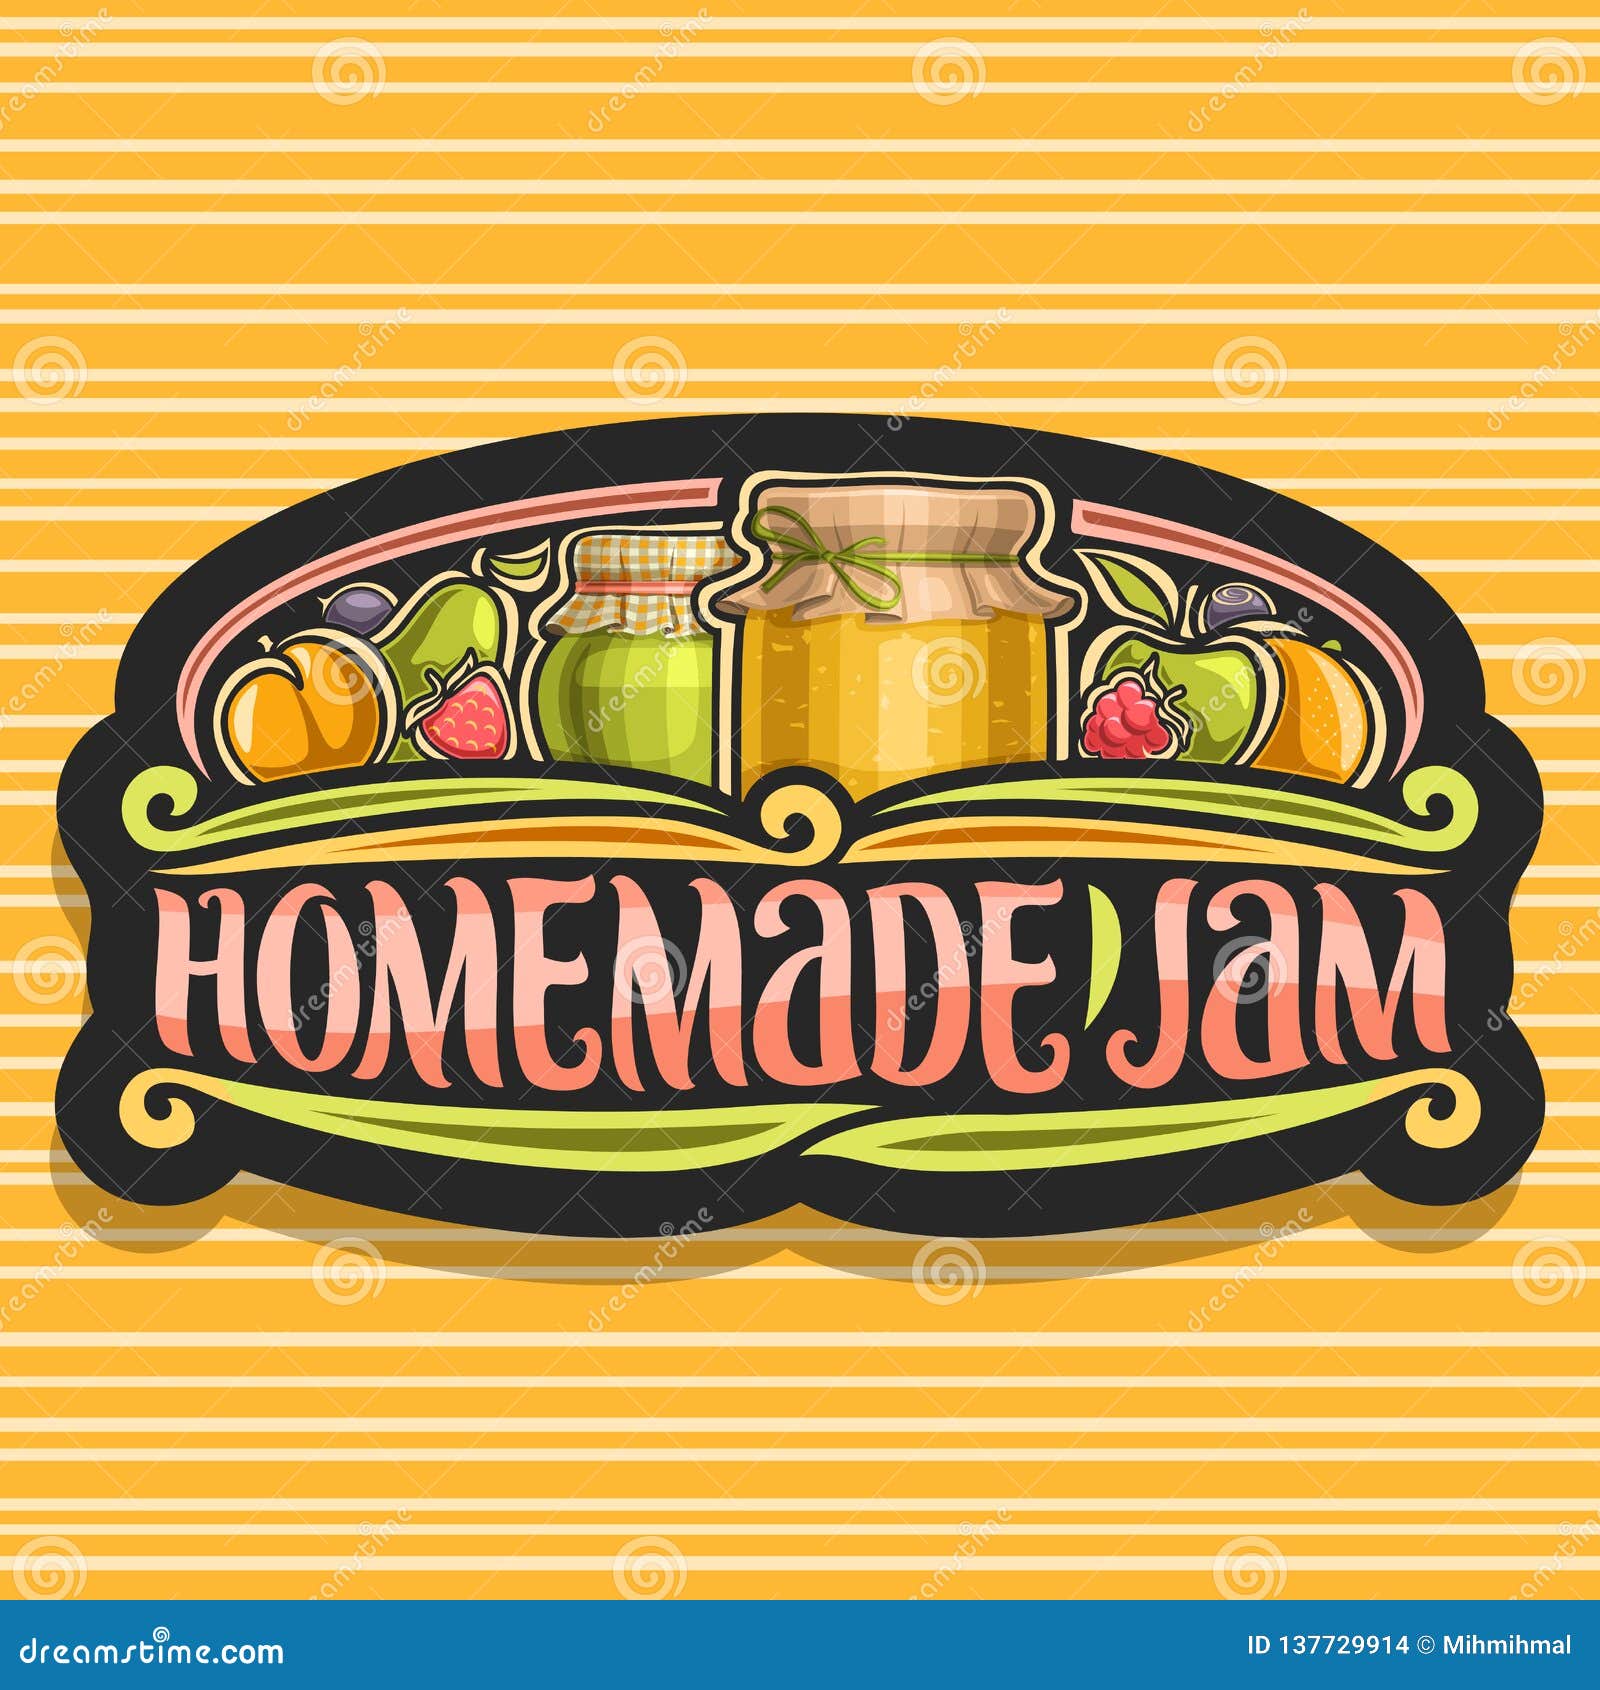 Vector Logo  For Homemade  Jam  Stock Vector Illustration 